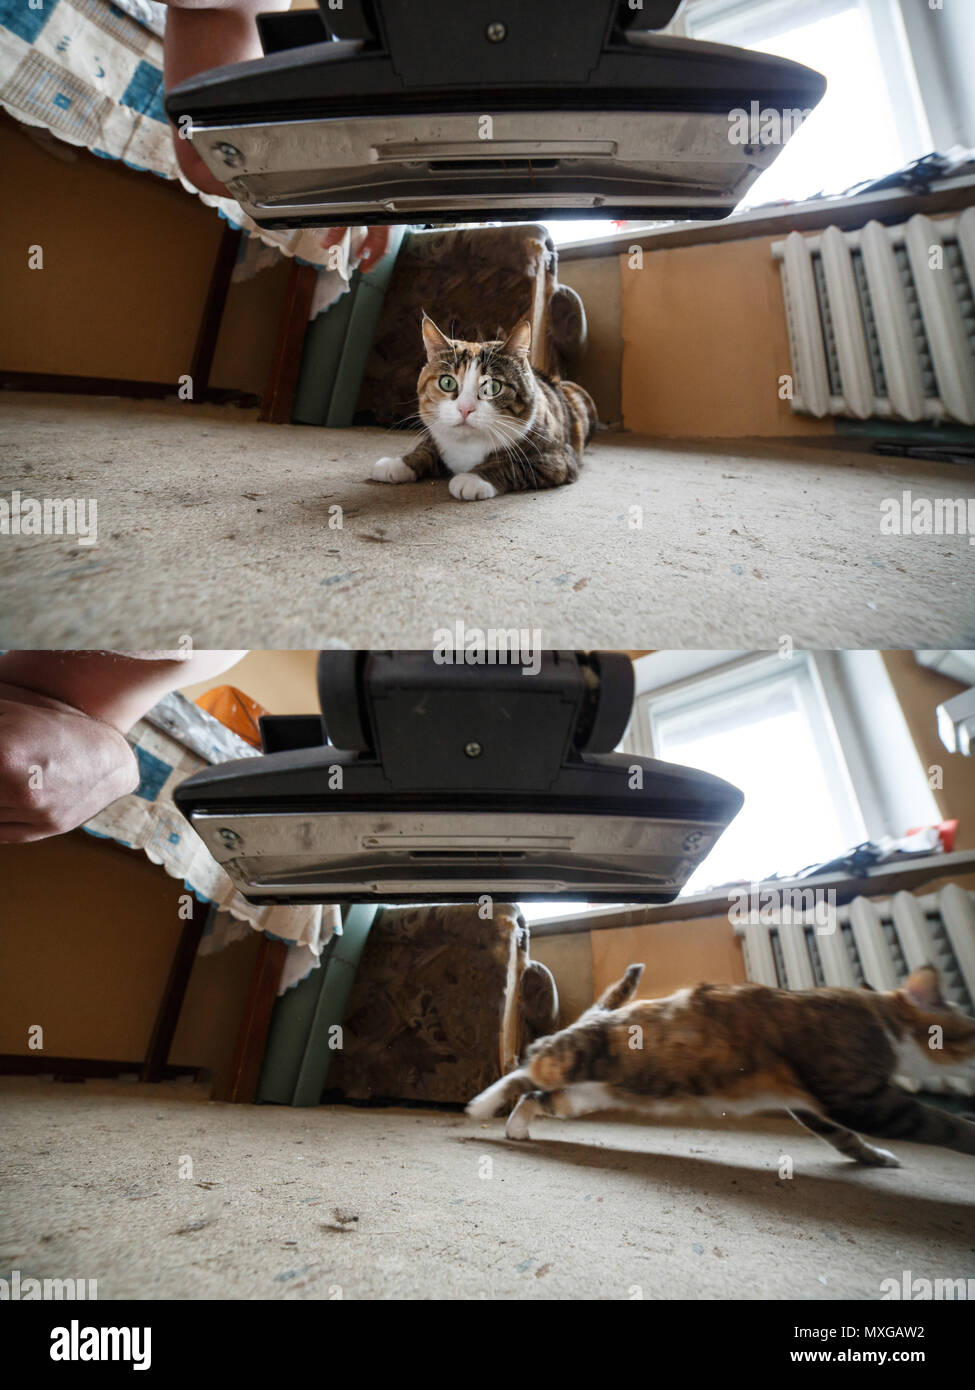 Erschrocken cat Überfahrt von Vakuum während der Reinigung der Wohnung. Blick vom Staubsauger Seite. Stockfoto